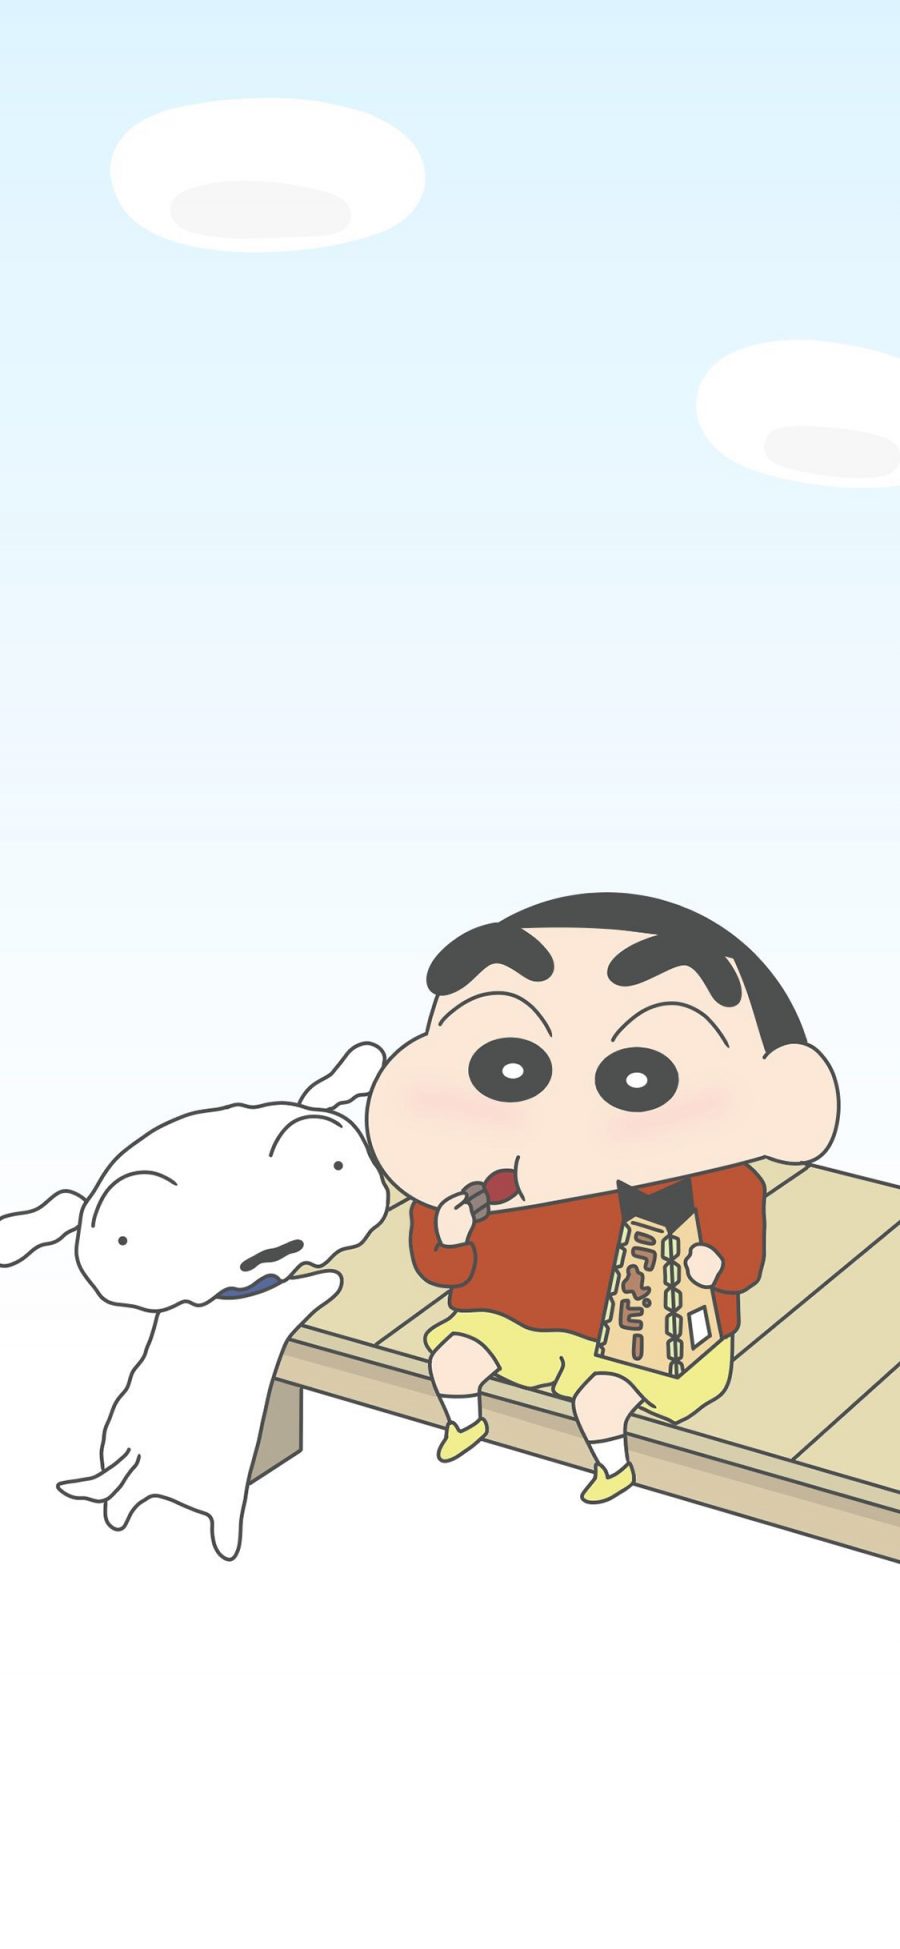 [2436×1125]蜡笔小新 小白 狗 动画 卡通 日本 苹果手机动漫壁纸图片